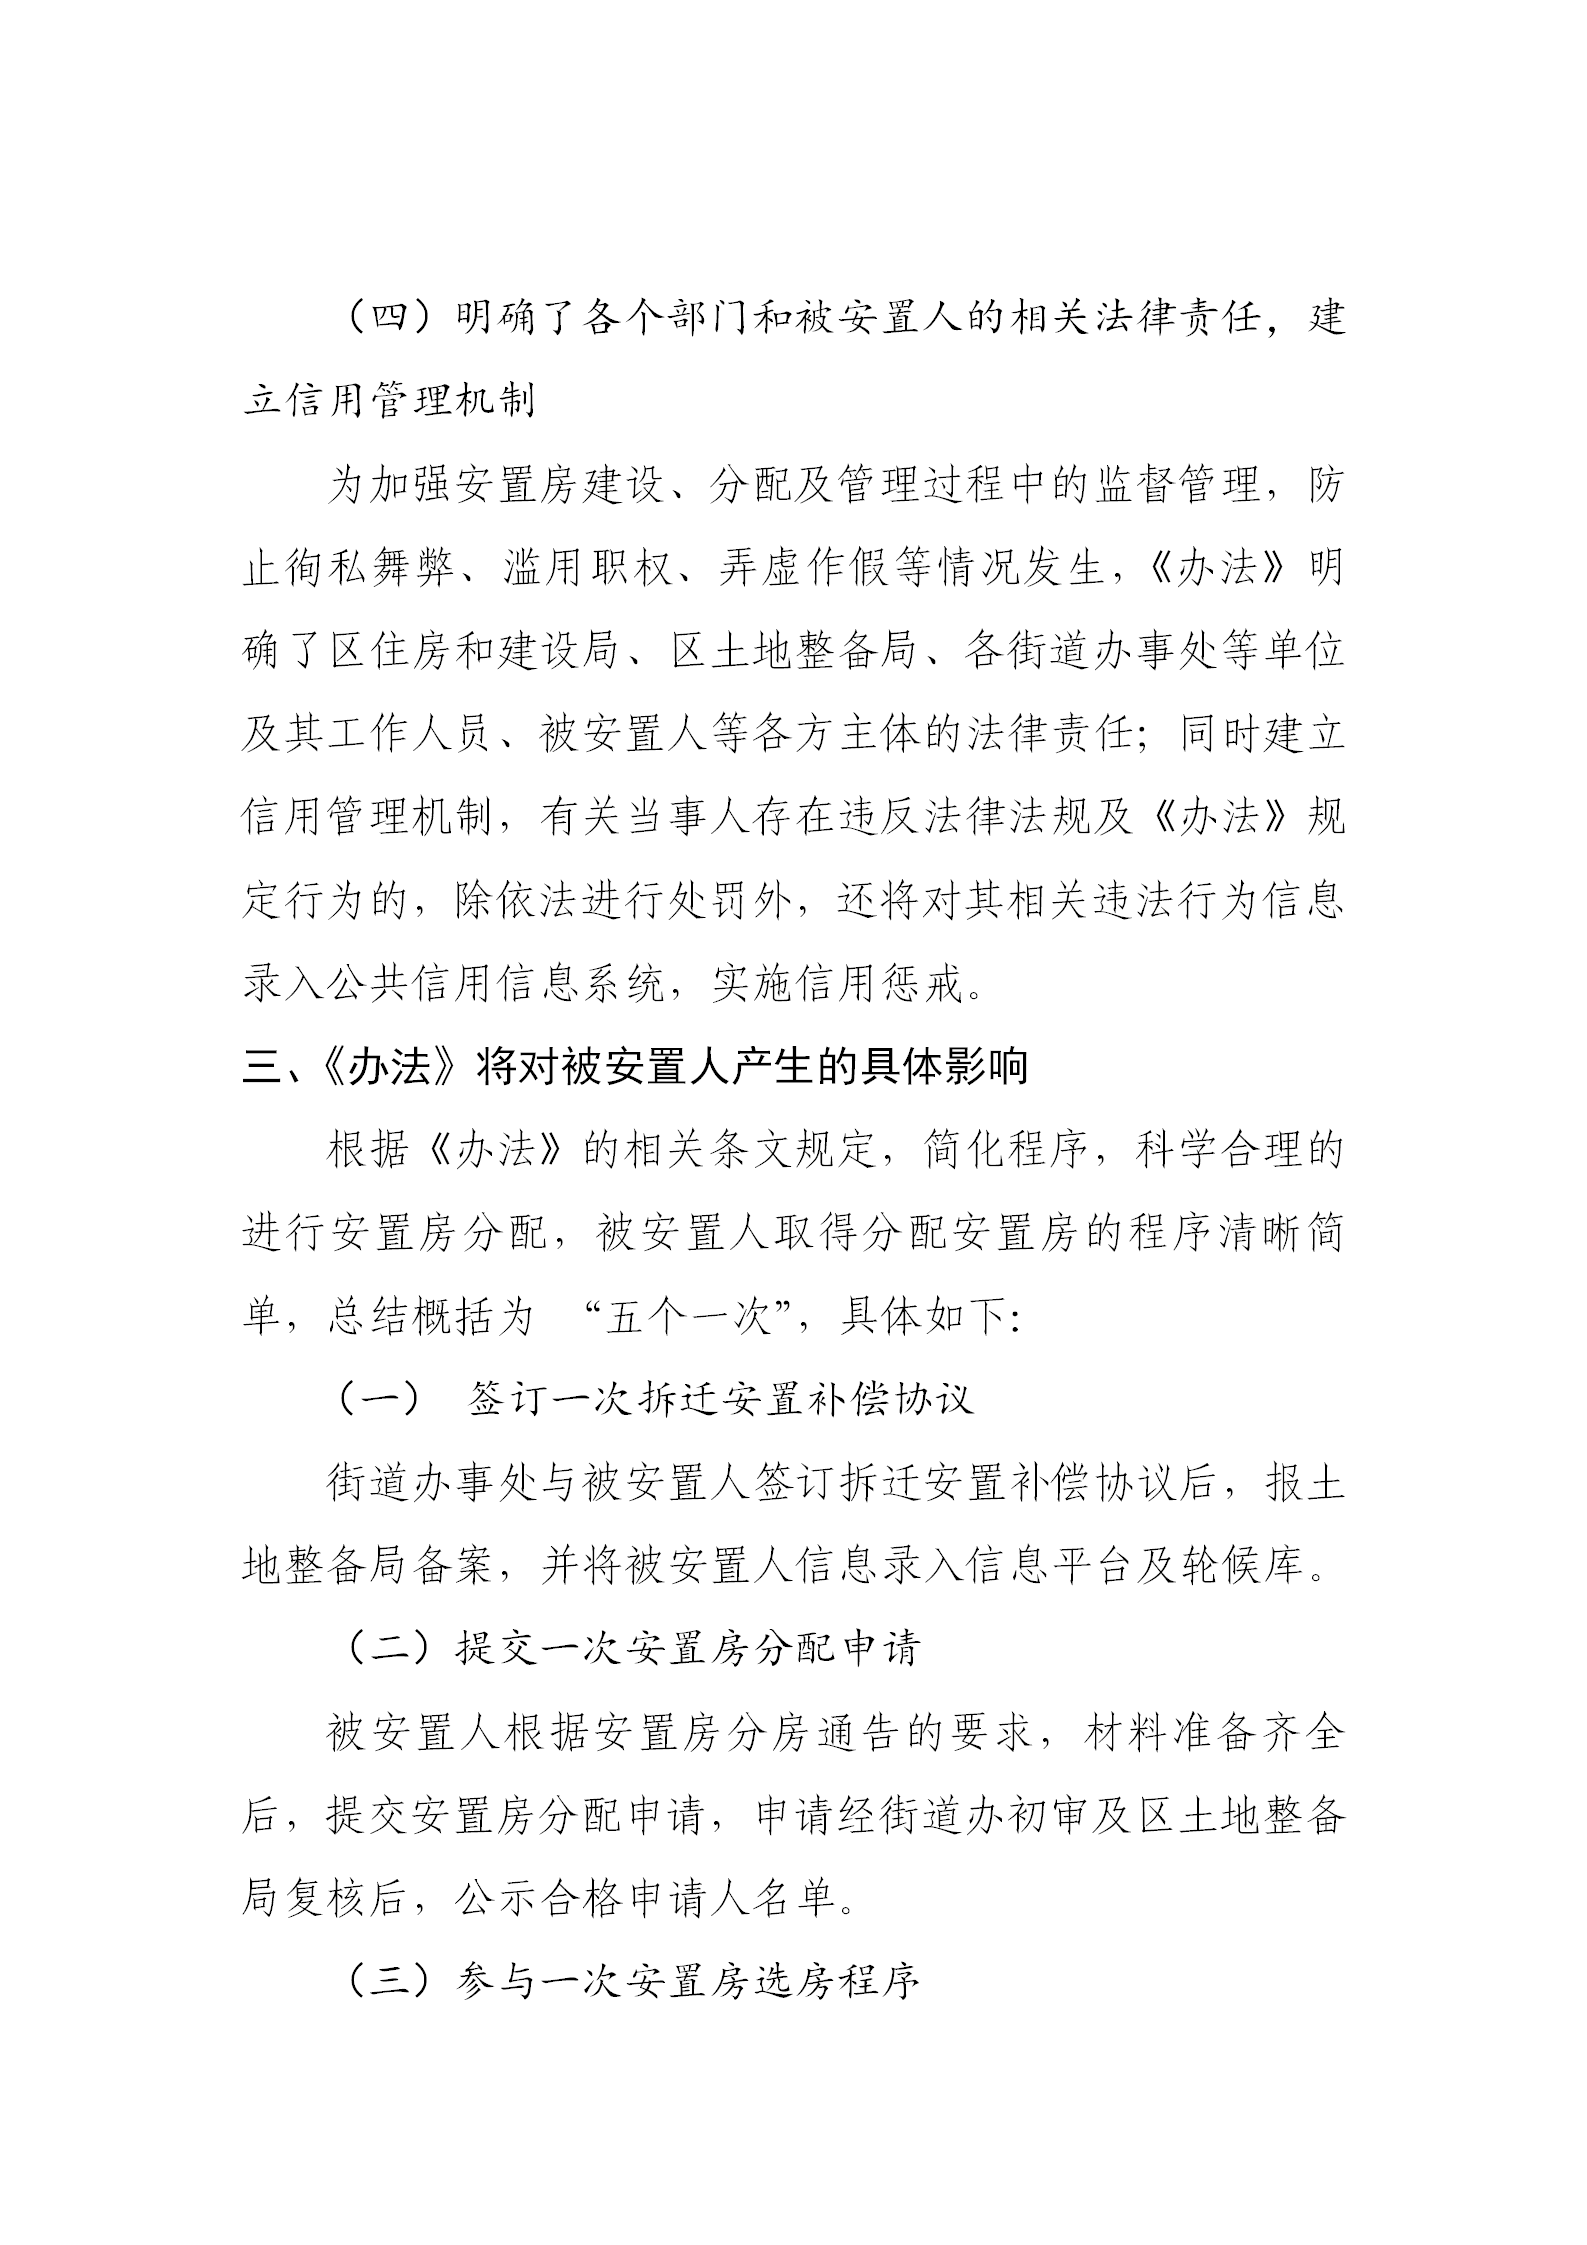 《深圳市光明区安置房管理办法》政策解读_05